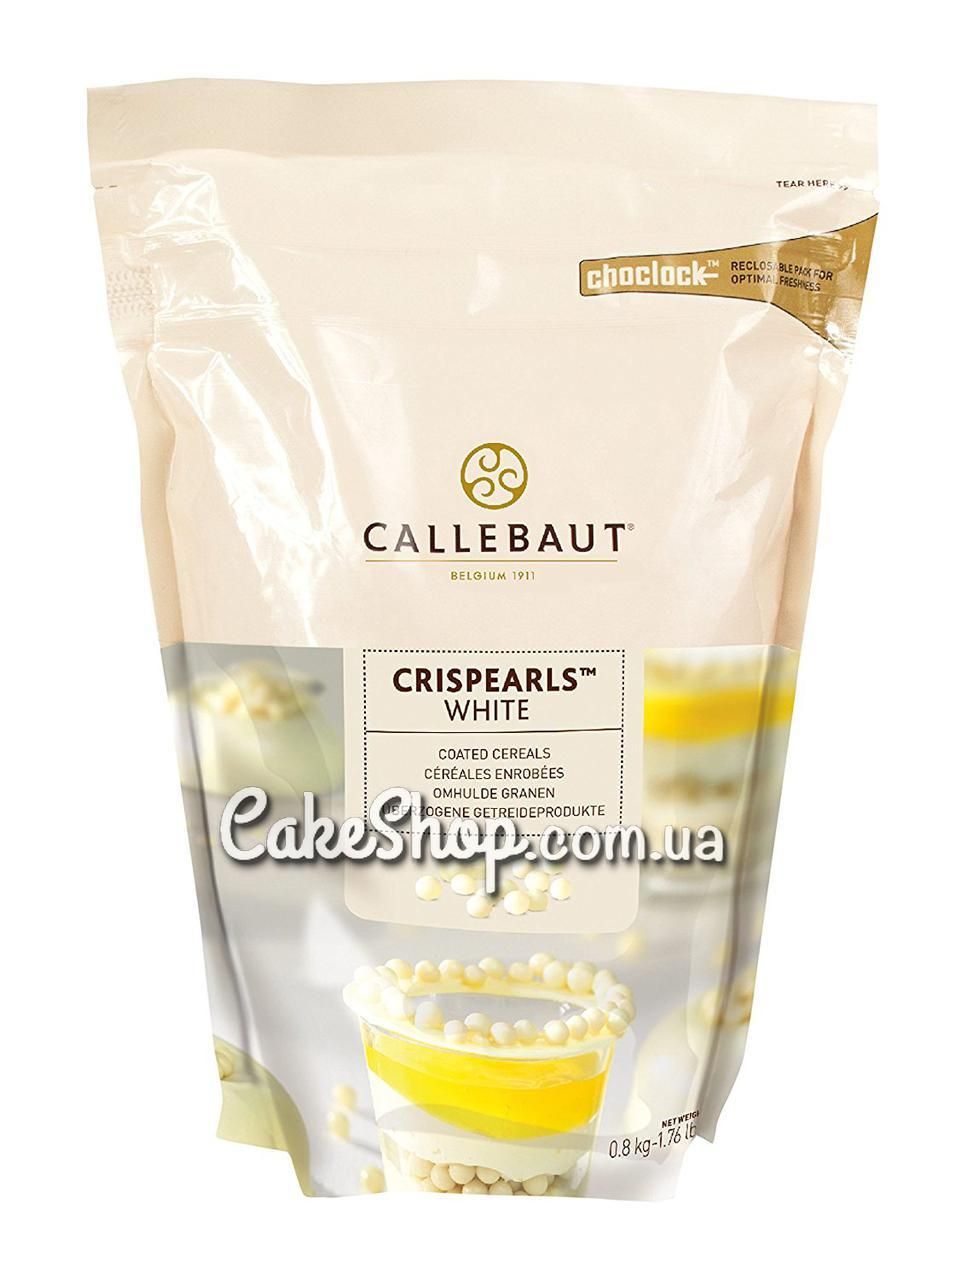 ⋗ Драже Crispearls White белый шоколад Callebaut, 50 г купить в Украине ➛ CakeShop.com.ua, фото